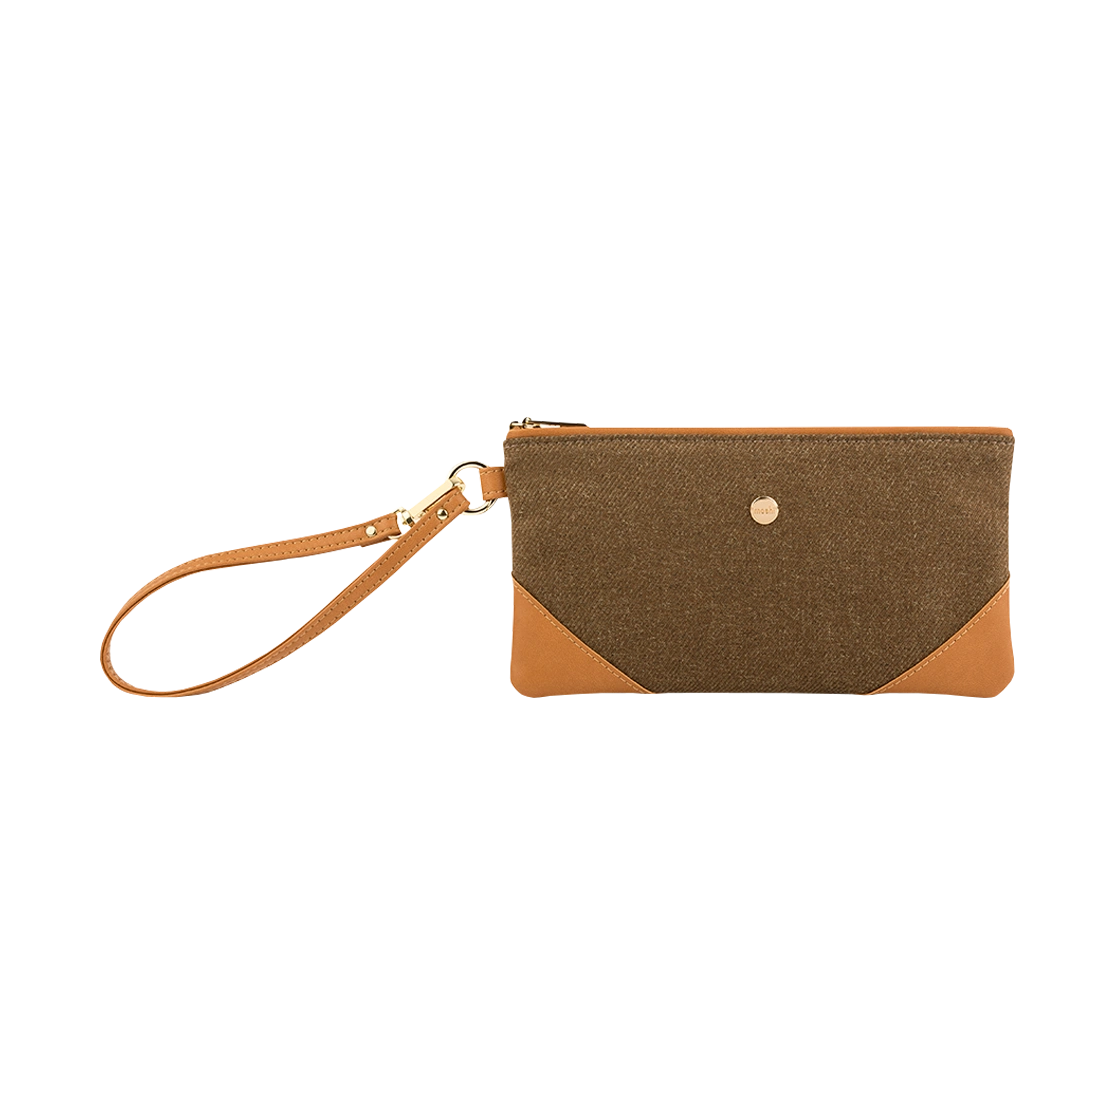 کیف دستی زیپ دار  موشی مدل Wristlet Clutch